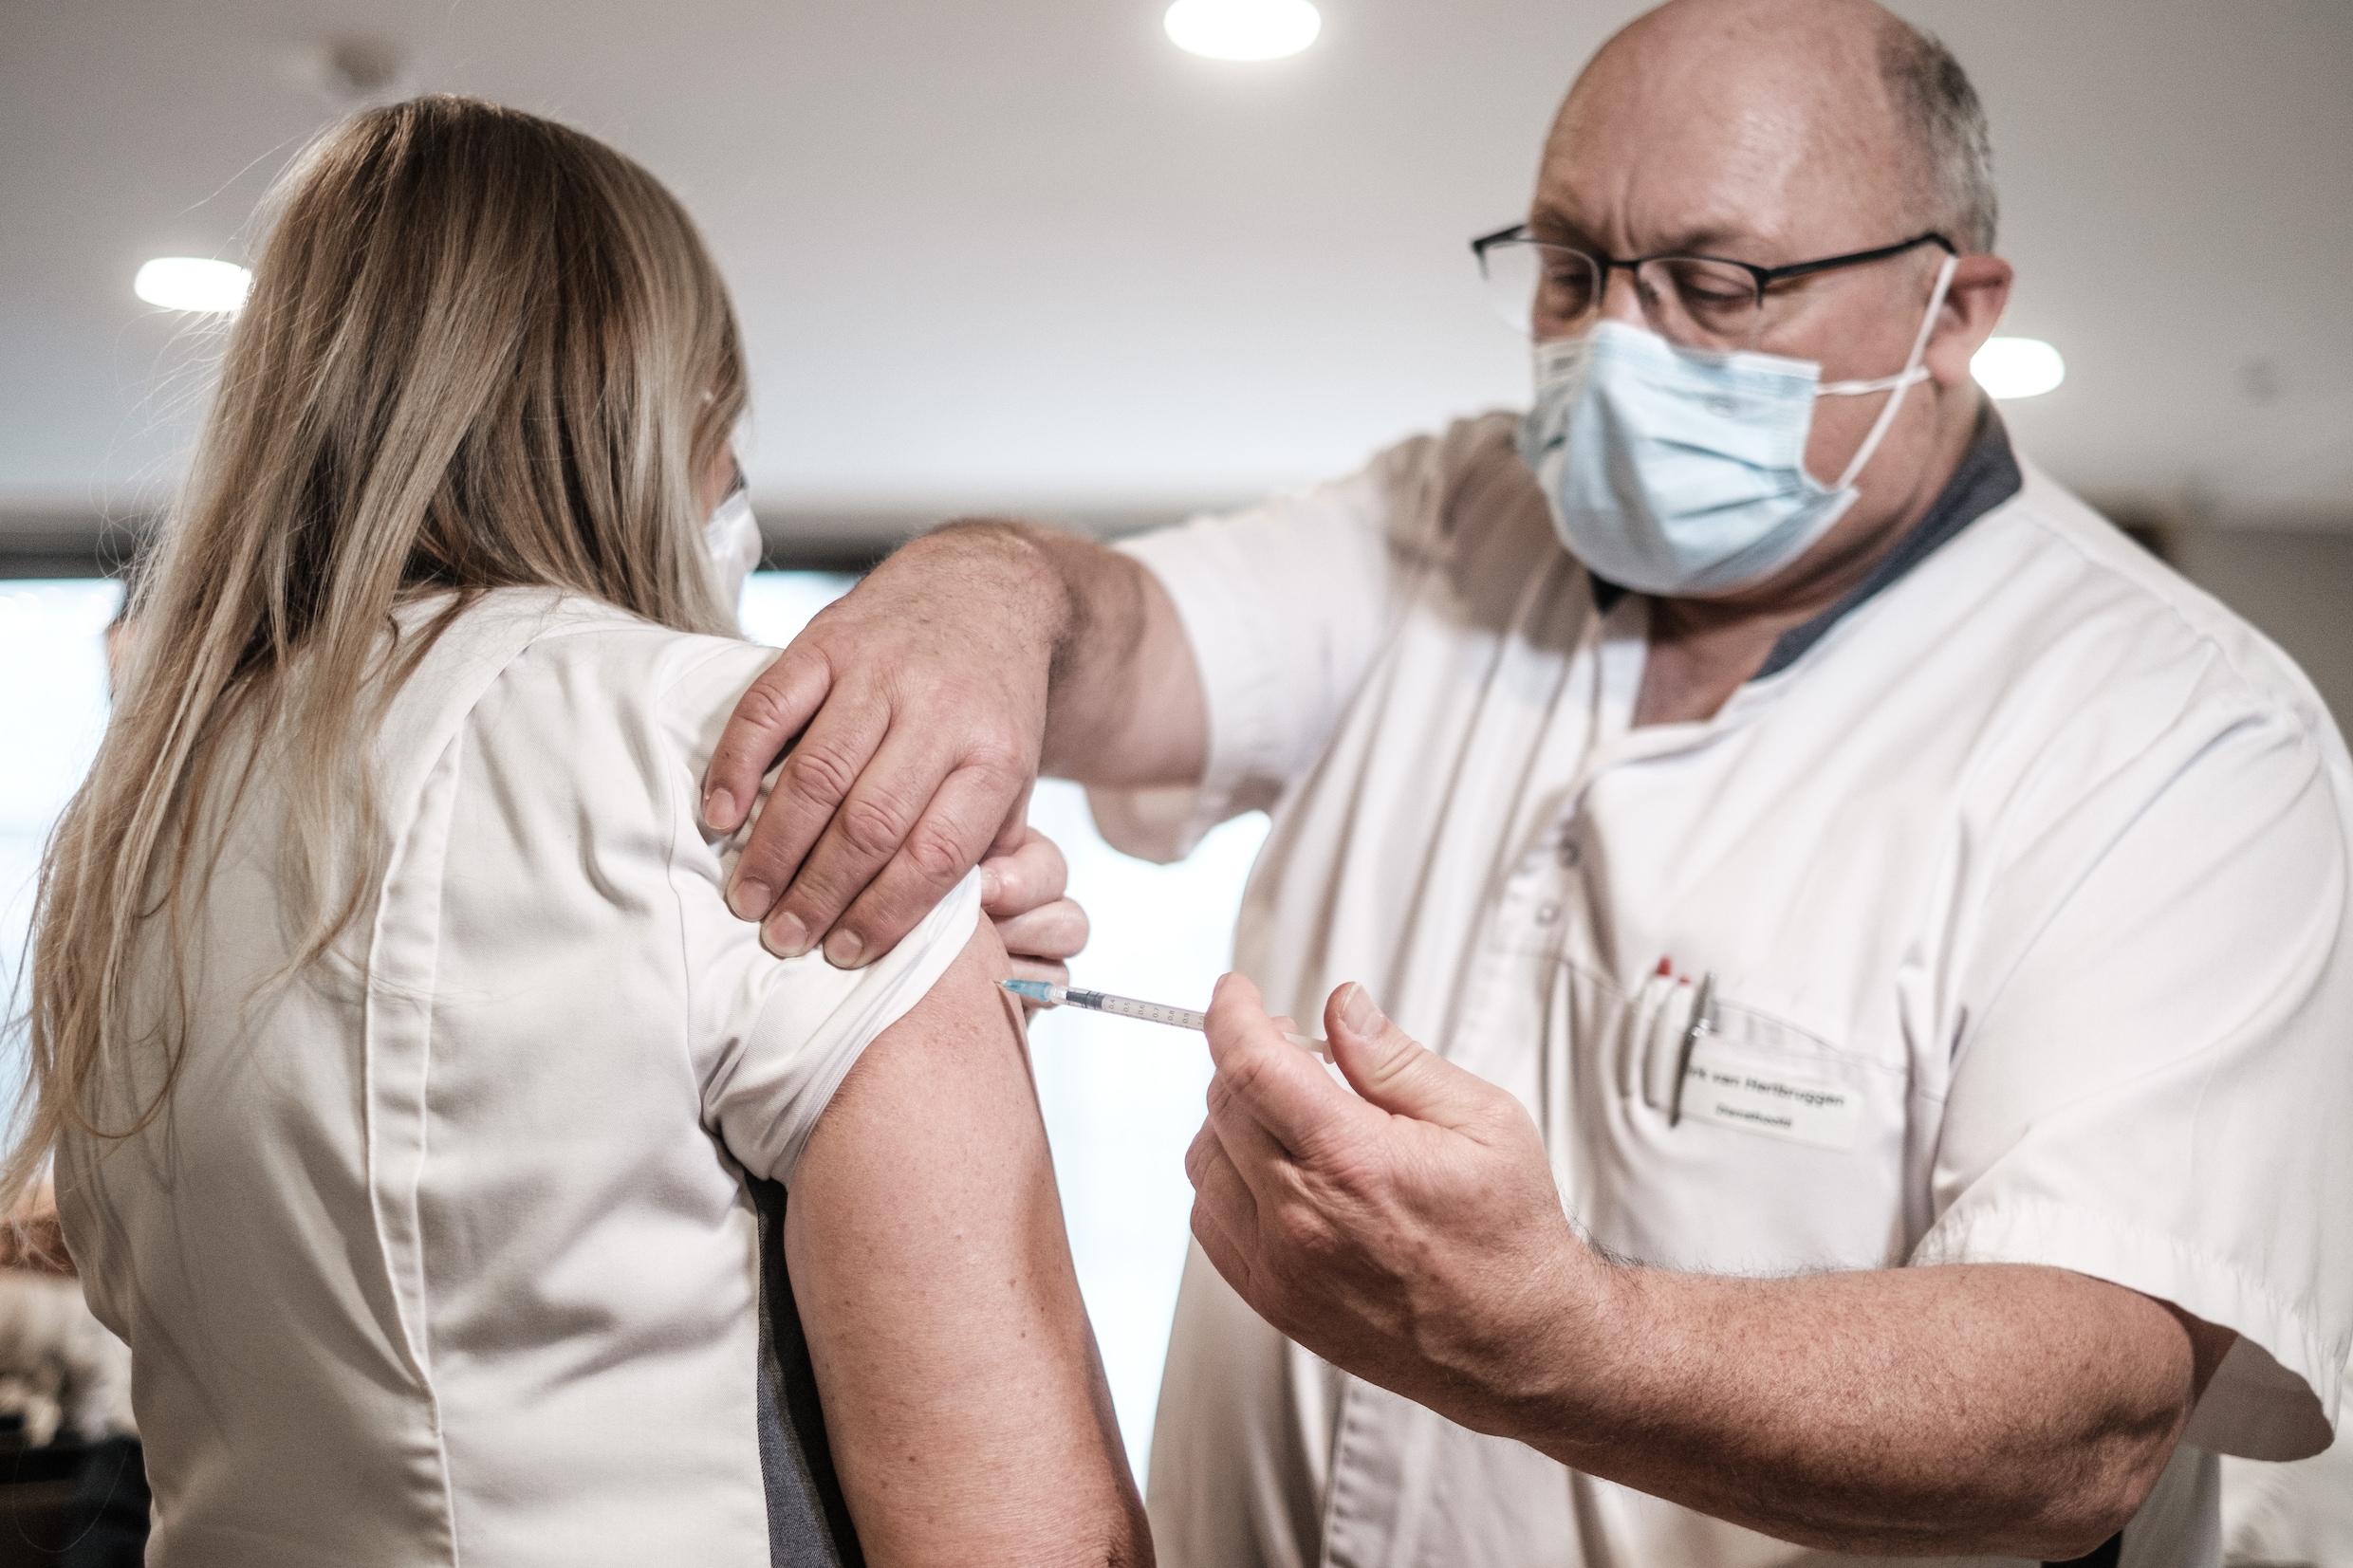 Ontbrekende handtekening kostte België tijdelijk 2,5 miljoen coronavaccins